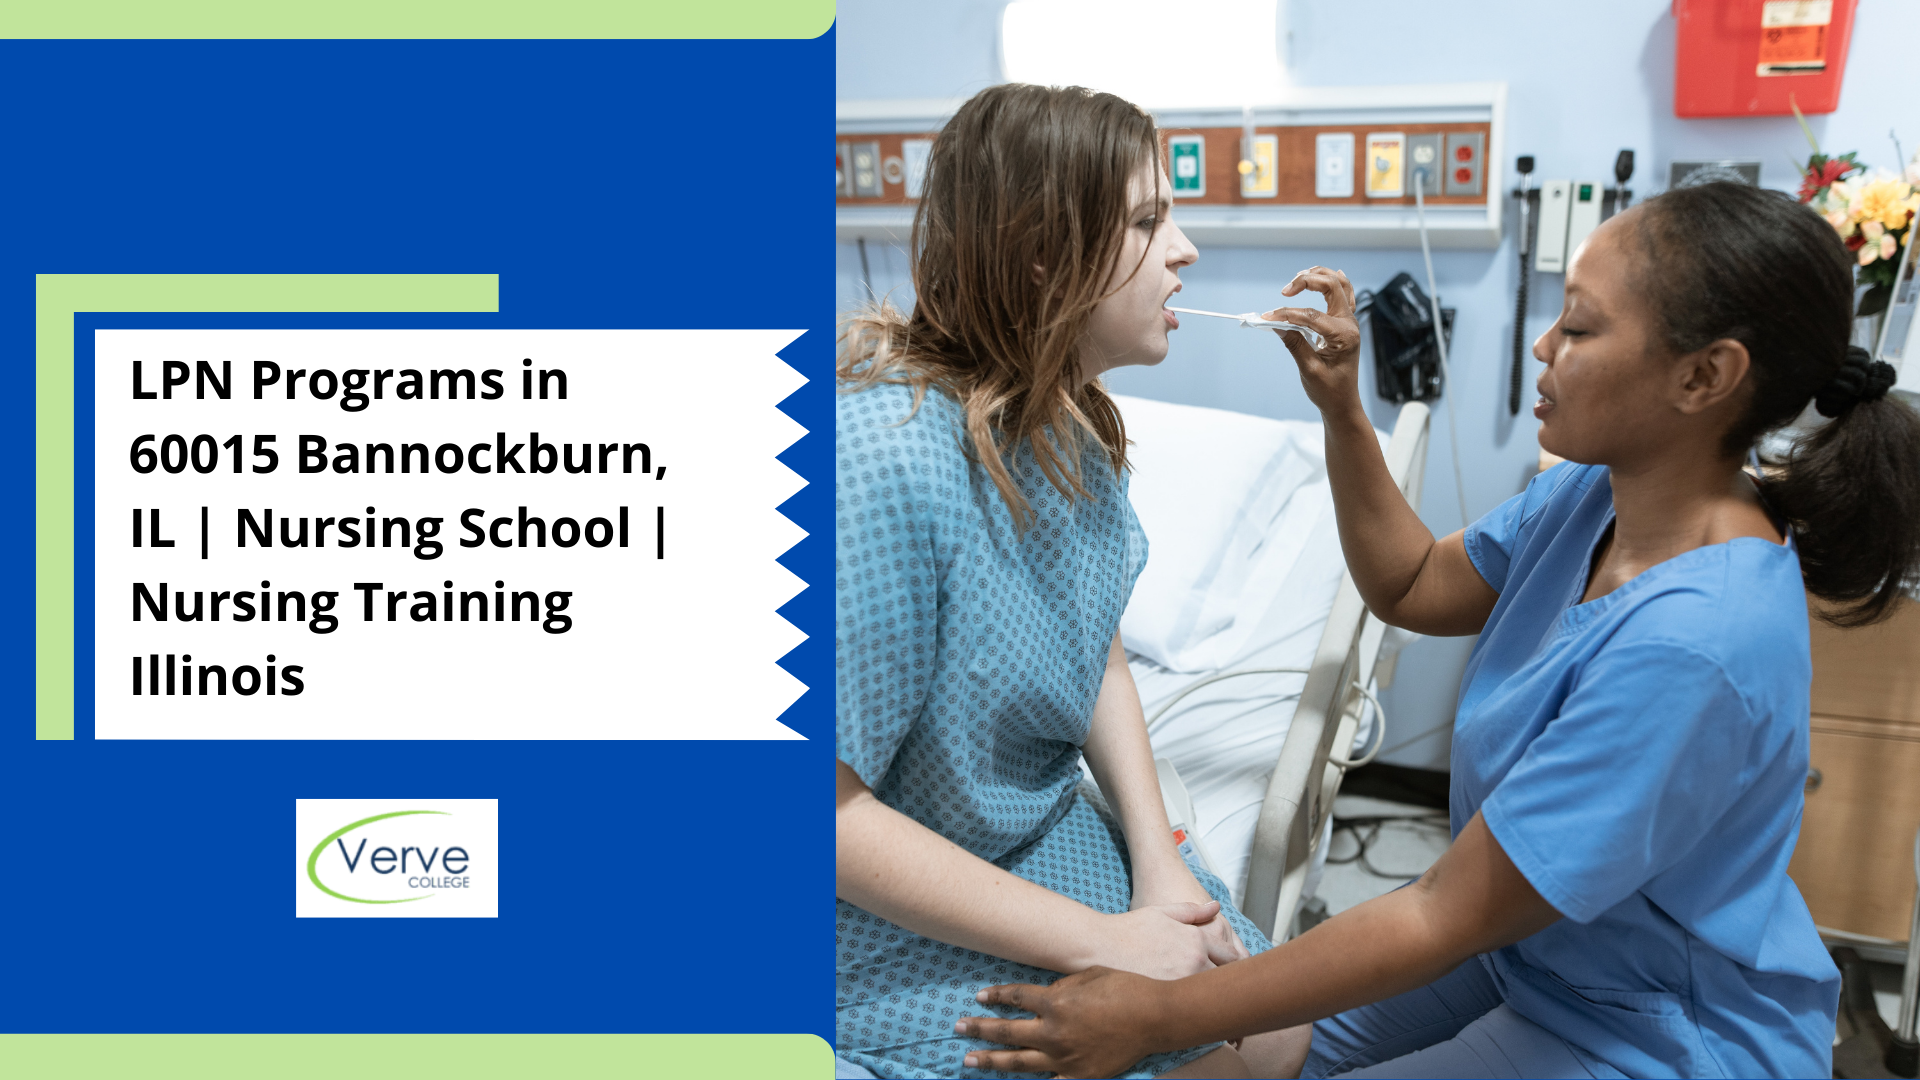 LPN Programs in 60015 Bannockburn, IL | Nursing School | Nursing Training Illinois